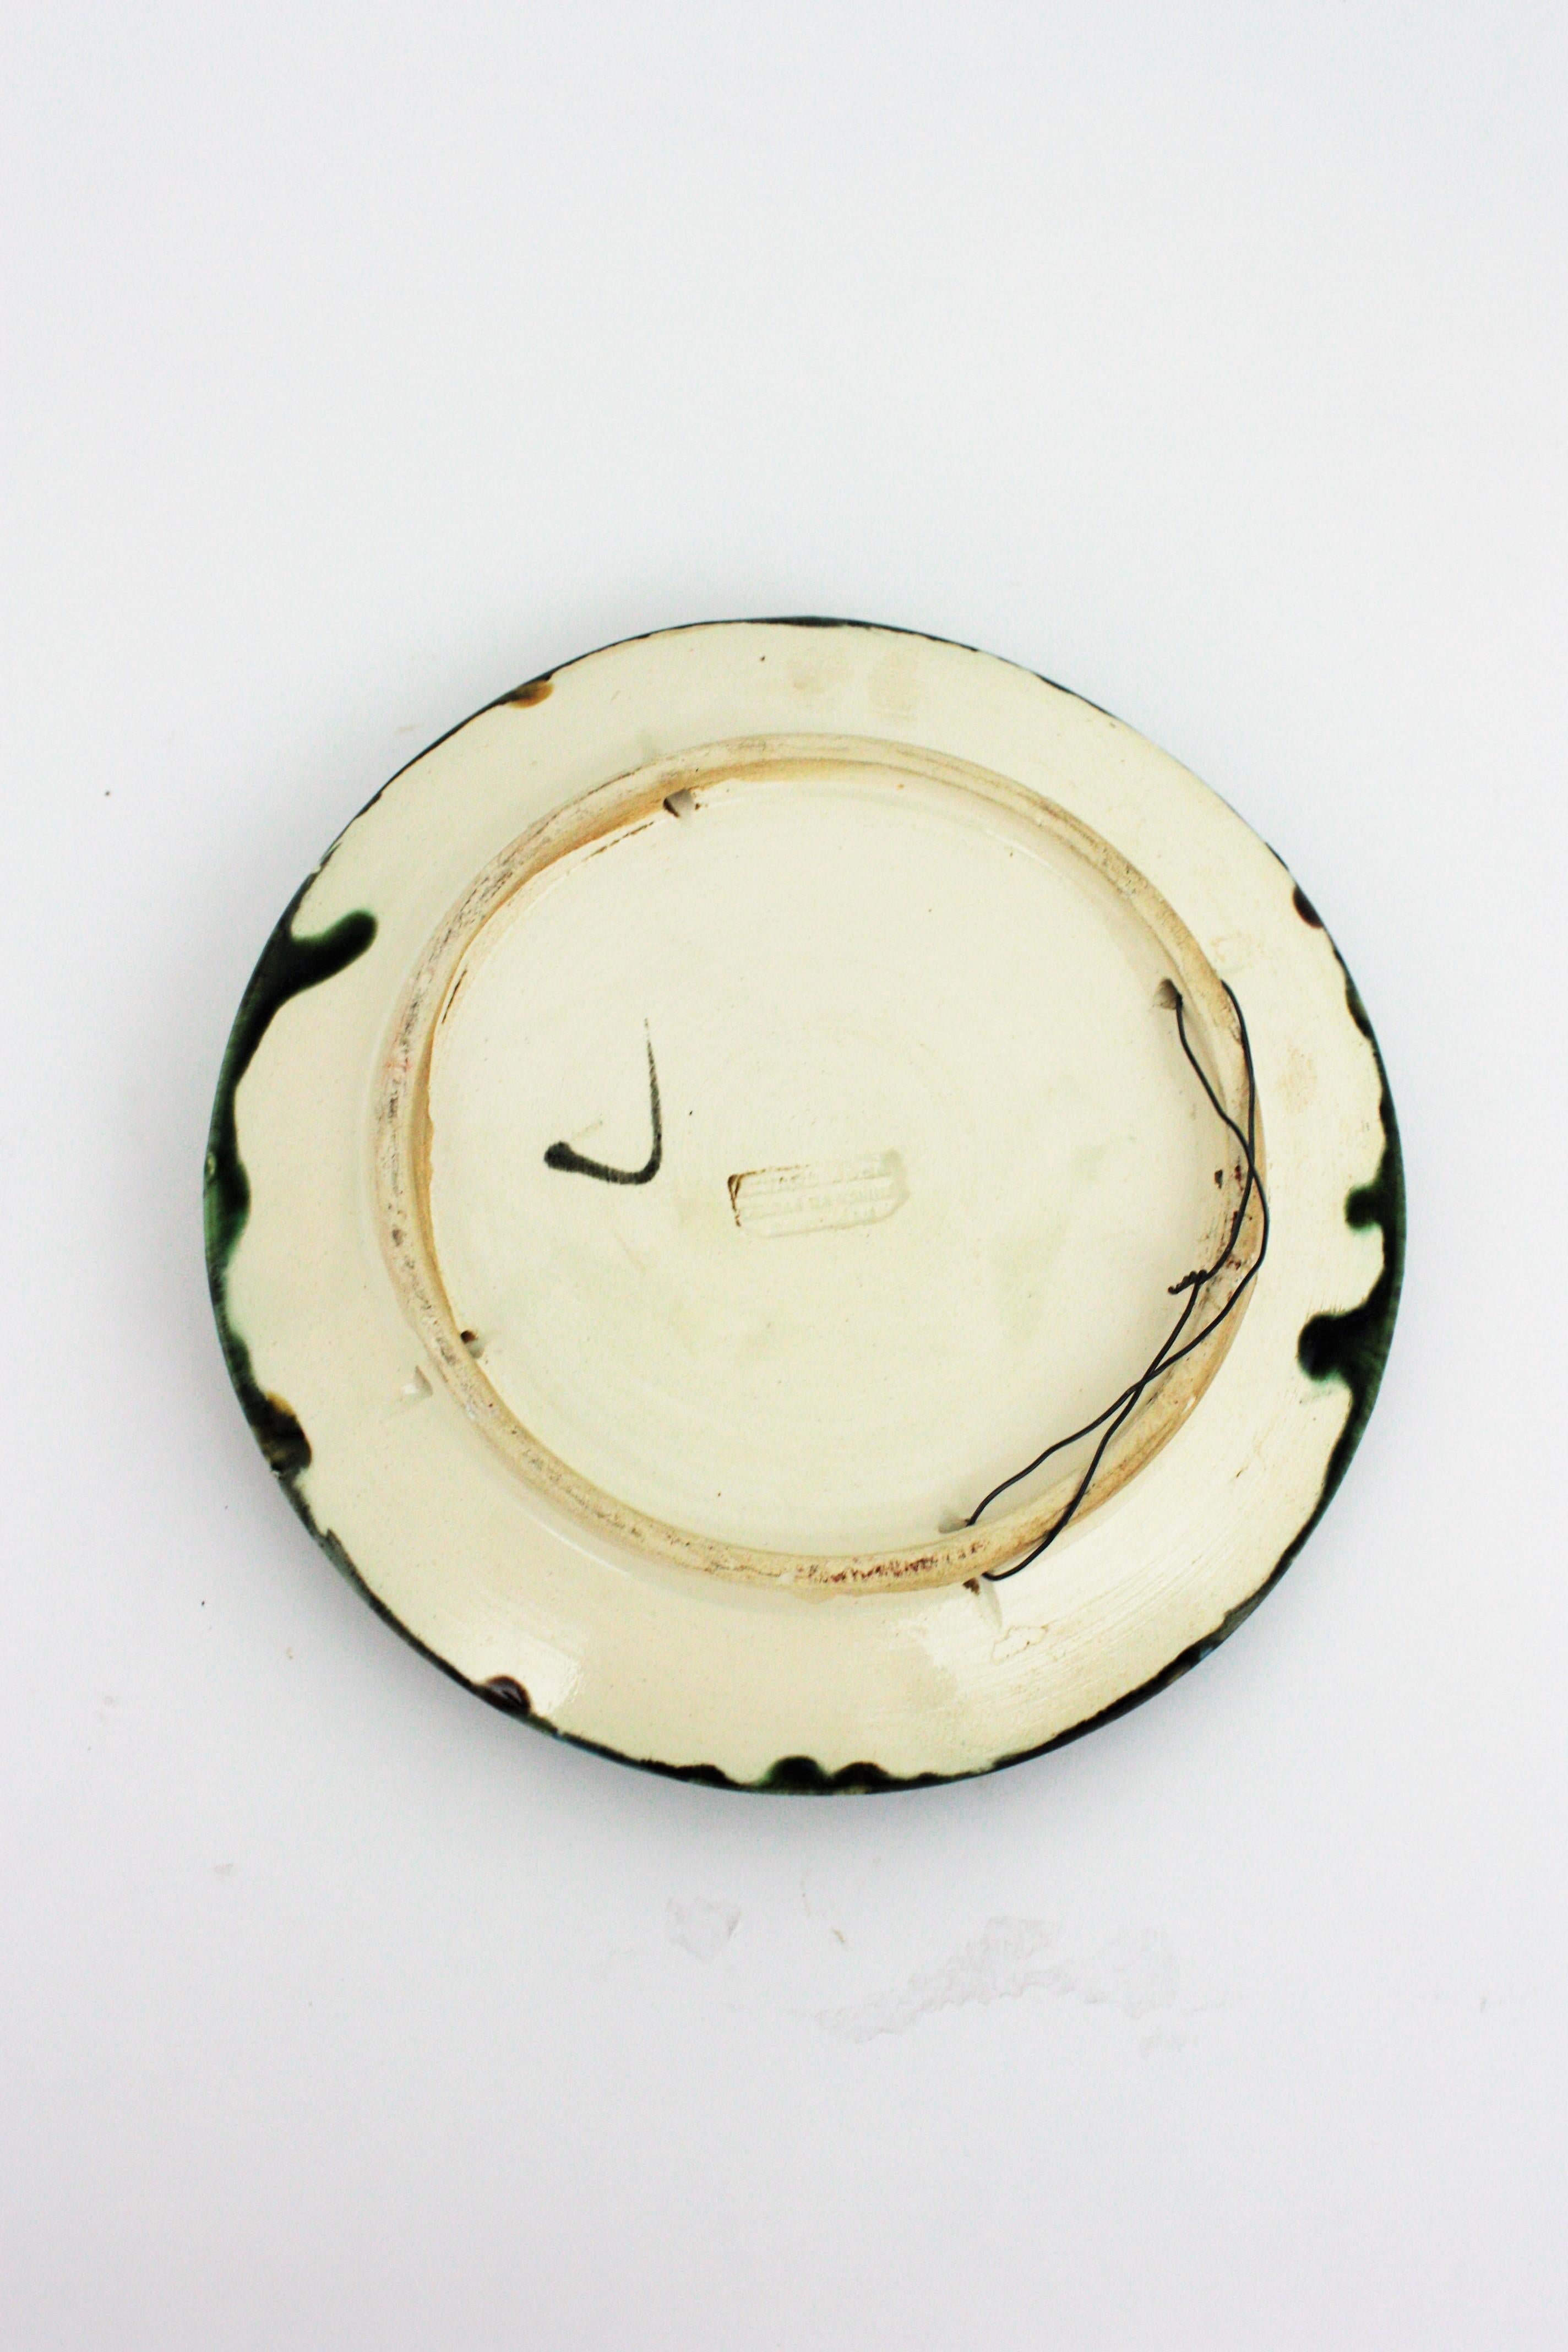 Trompe L' Oeil Crab Decorative Wall Plate in Majolica Ceramic In Good Condition For Sale In Barcelona, ES